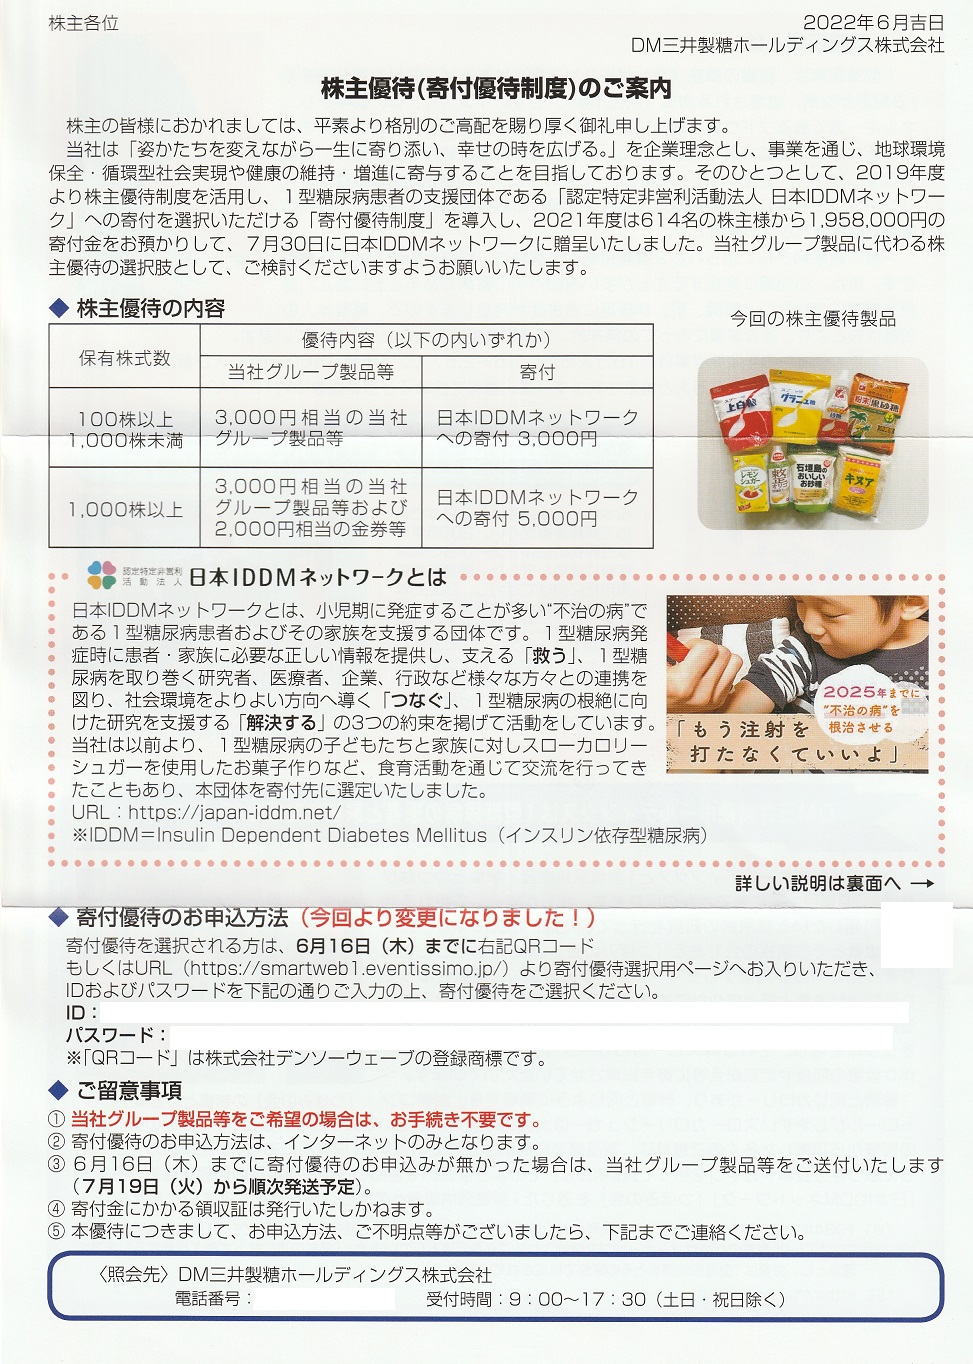 【3月優待】DM三井製糖ホールディングス株式会社から自社グループ製品(砂糖類)が到着しました